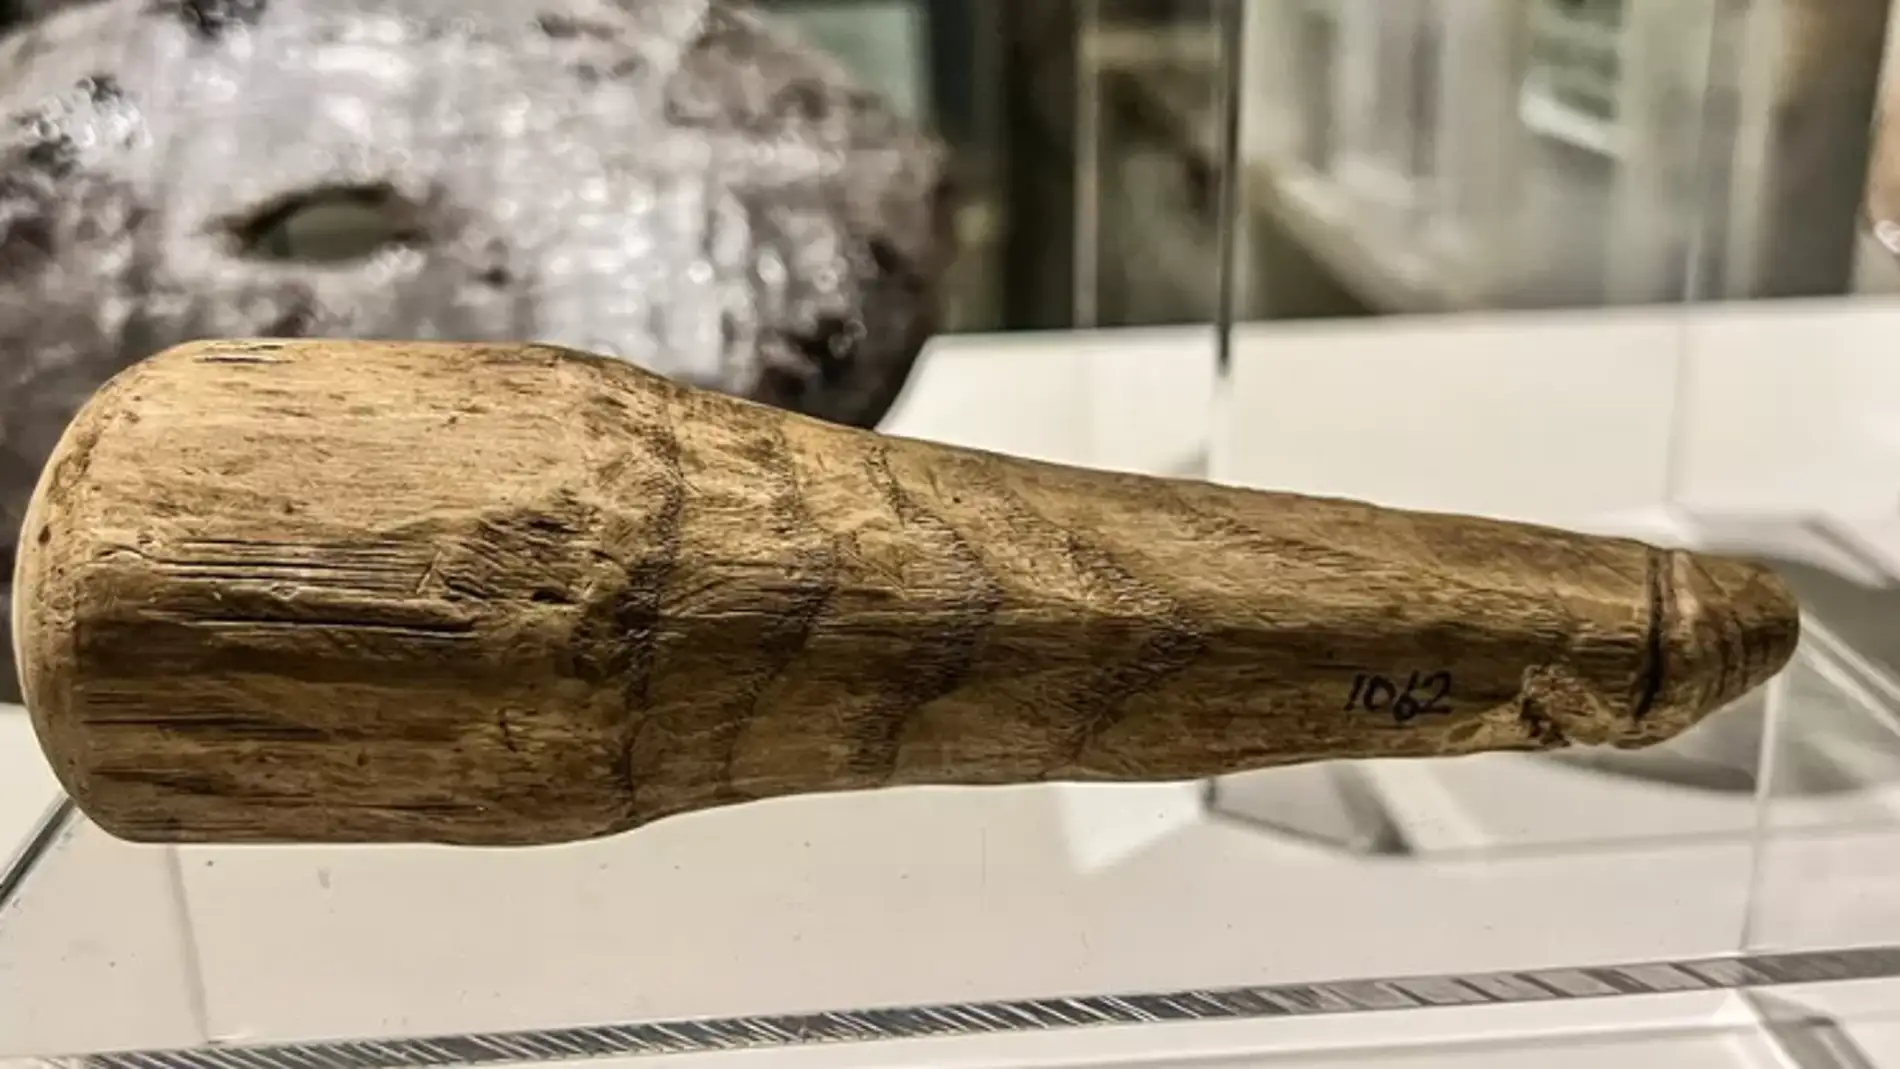 Descubren un juguete sexual de 2.000 años de antigüedad que podría ser el primer consolador romano